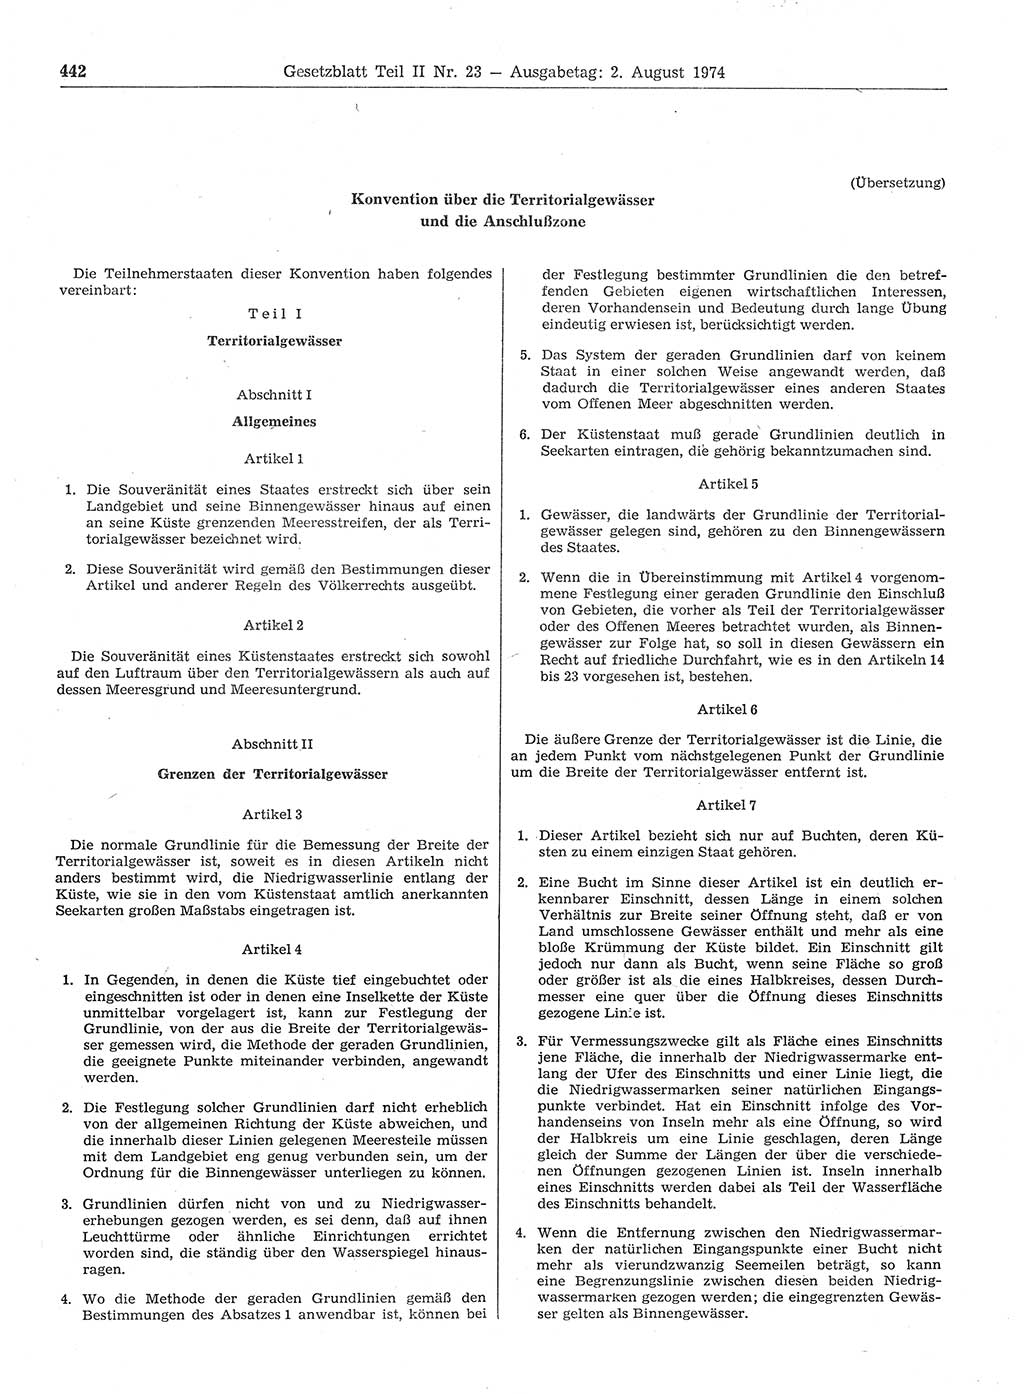 Gesetzblatt (GBl.) der Deutschen Demokratischen Republik (DDR) Teil ⅠⅠ 1974, Seite 442 (GBl. DDR ⅠⅠ 1974, S. 442)